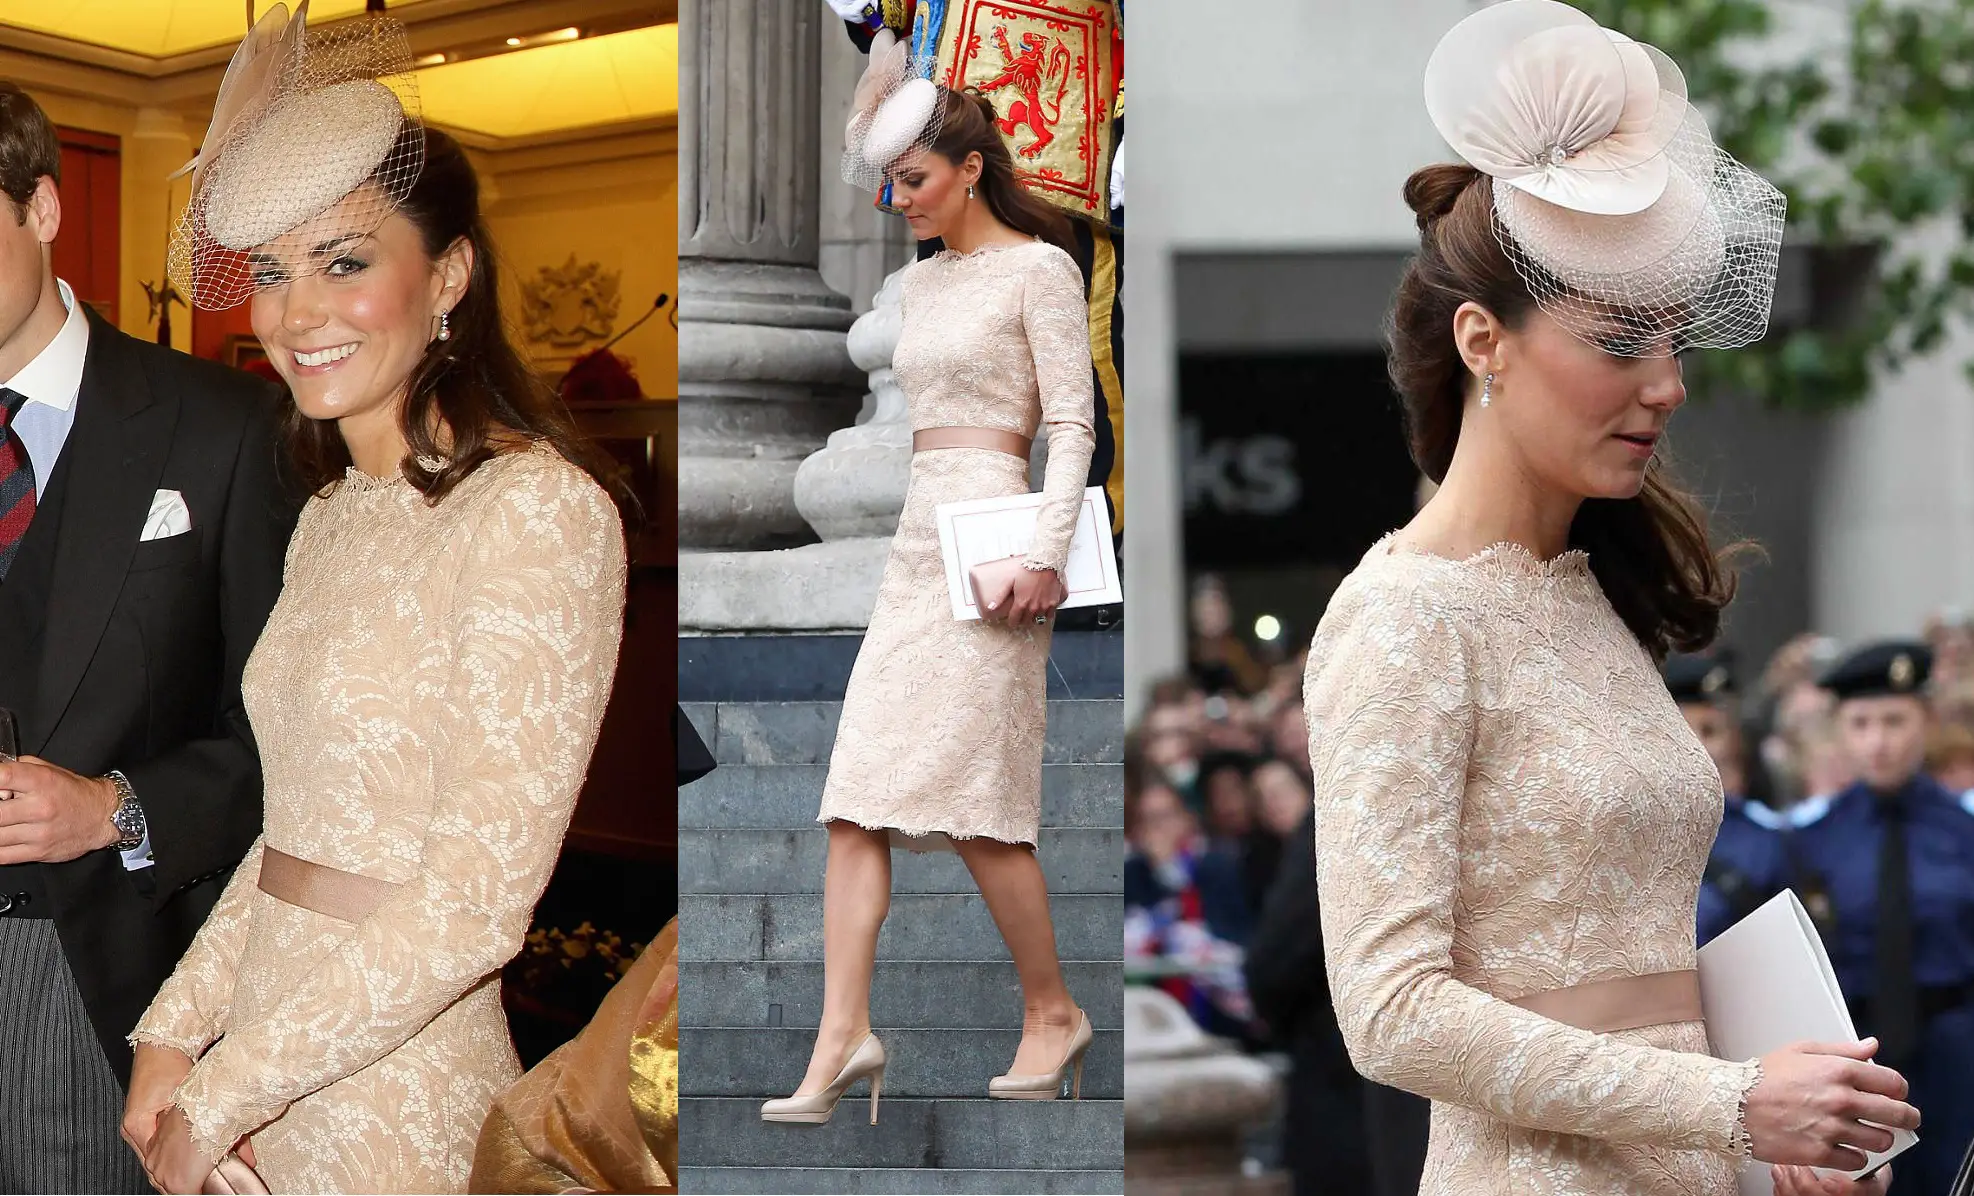 Duchess of Cambridge wore Alexander McQueen for Diamond Jubilee Lunch in 2012